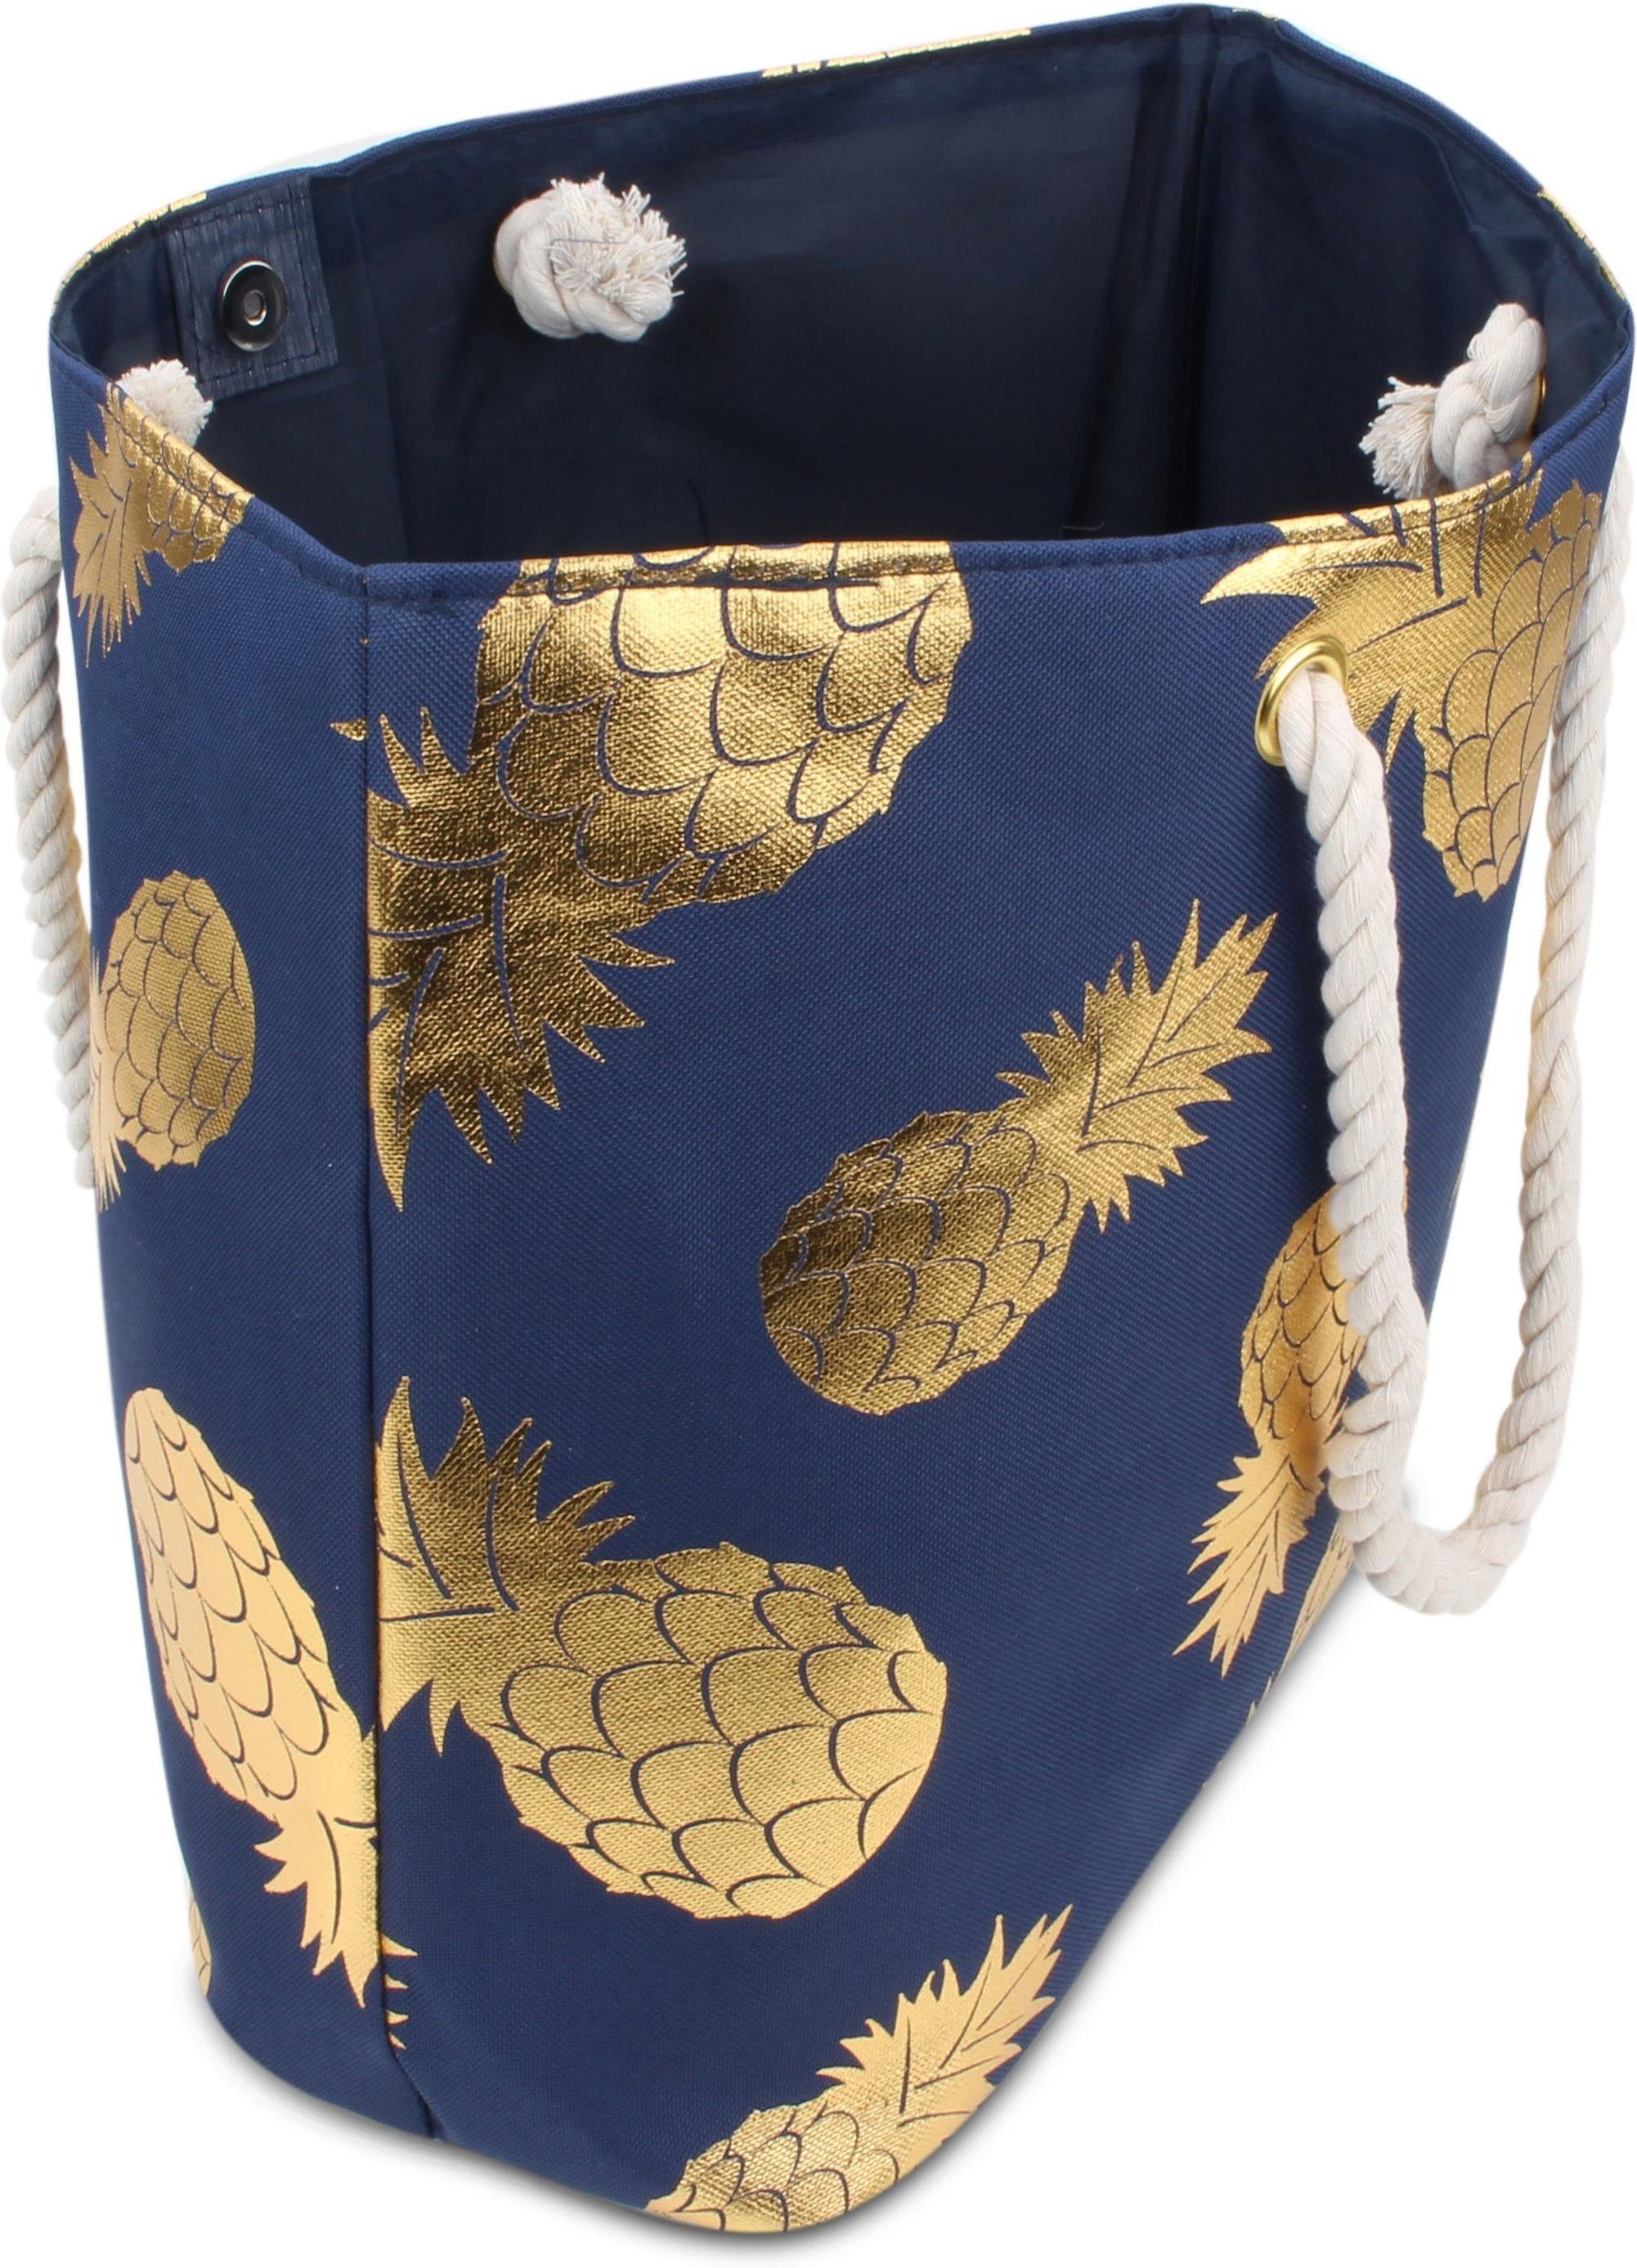 normani Strandtasche Bequeme Strandtasche, Sommer-Umhängetasche, tragbar als Pineapple Schultertasche Gold Henkeltasche